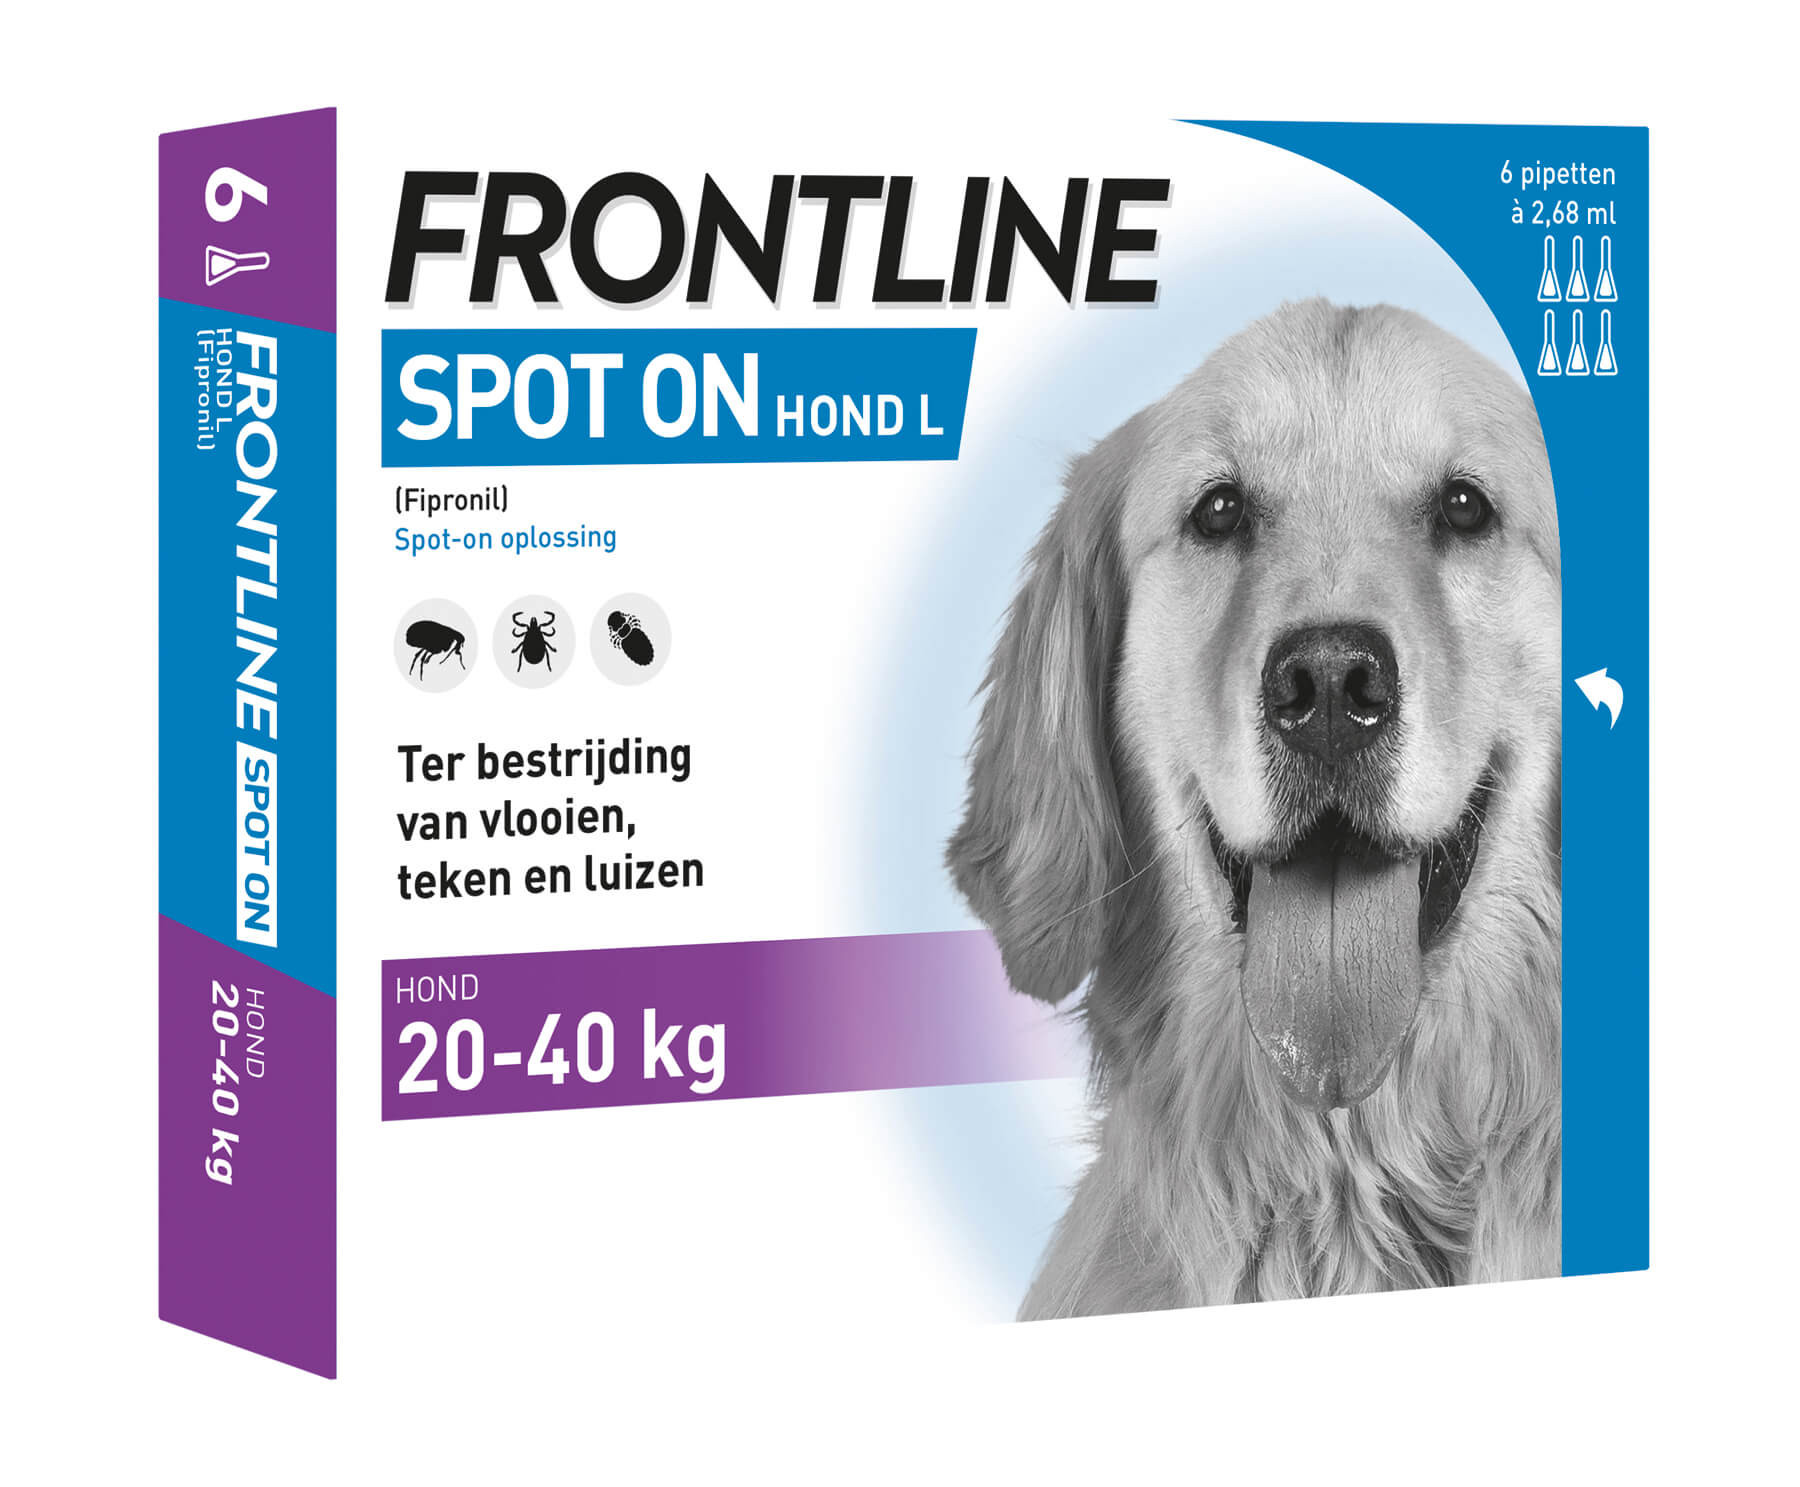 Frontline Spot on Hond L 4 pipetten